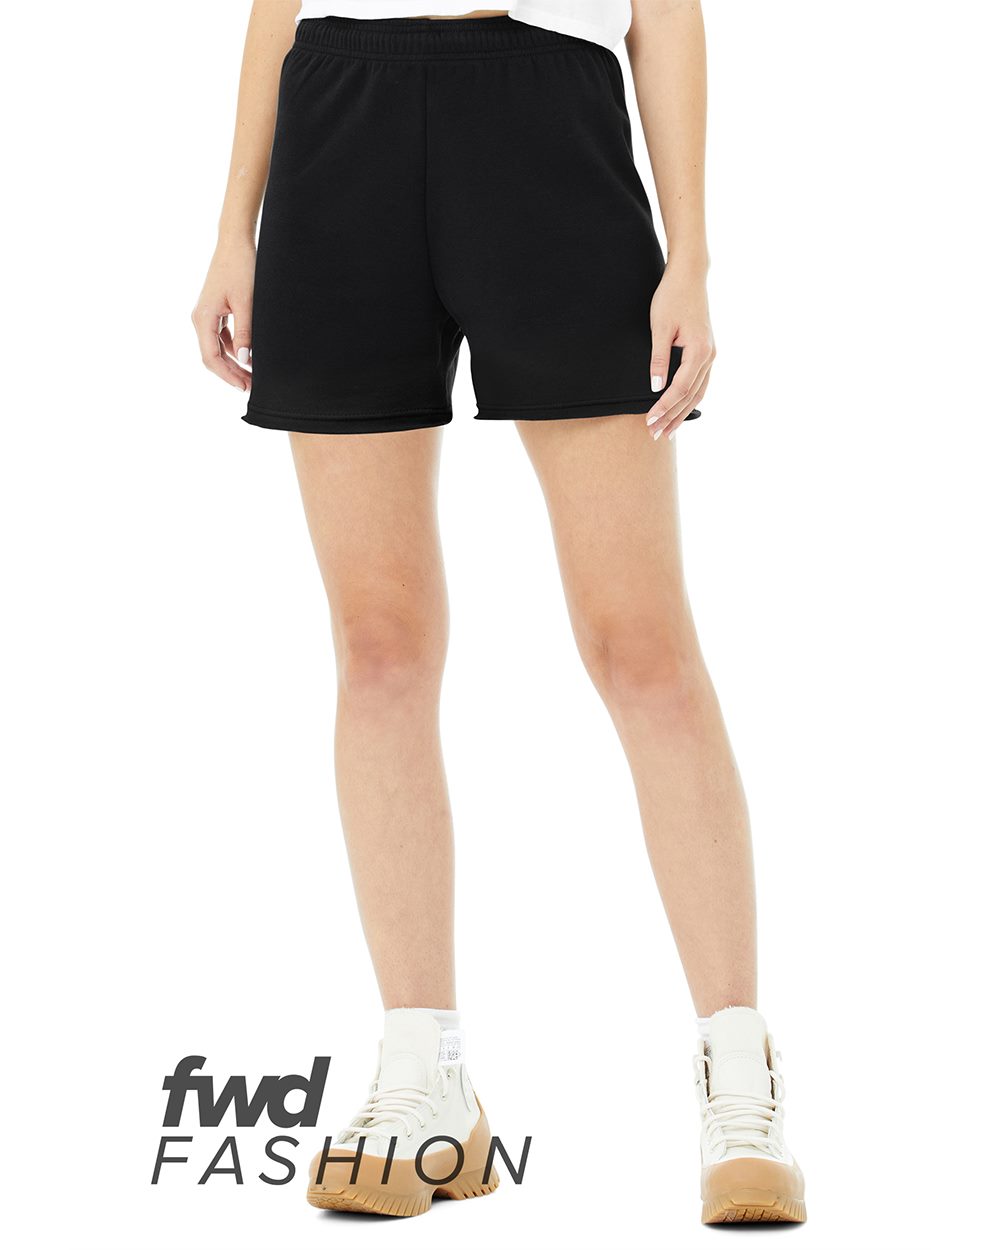 BELLA + CANVAS 3797 - FWD Fashion Women's Cutoff Fleece Shorts